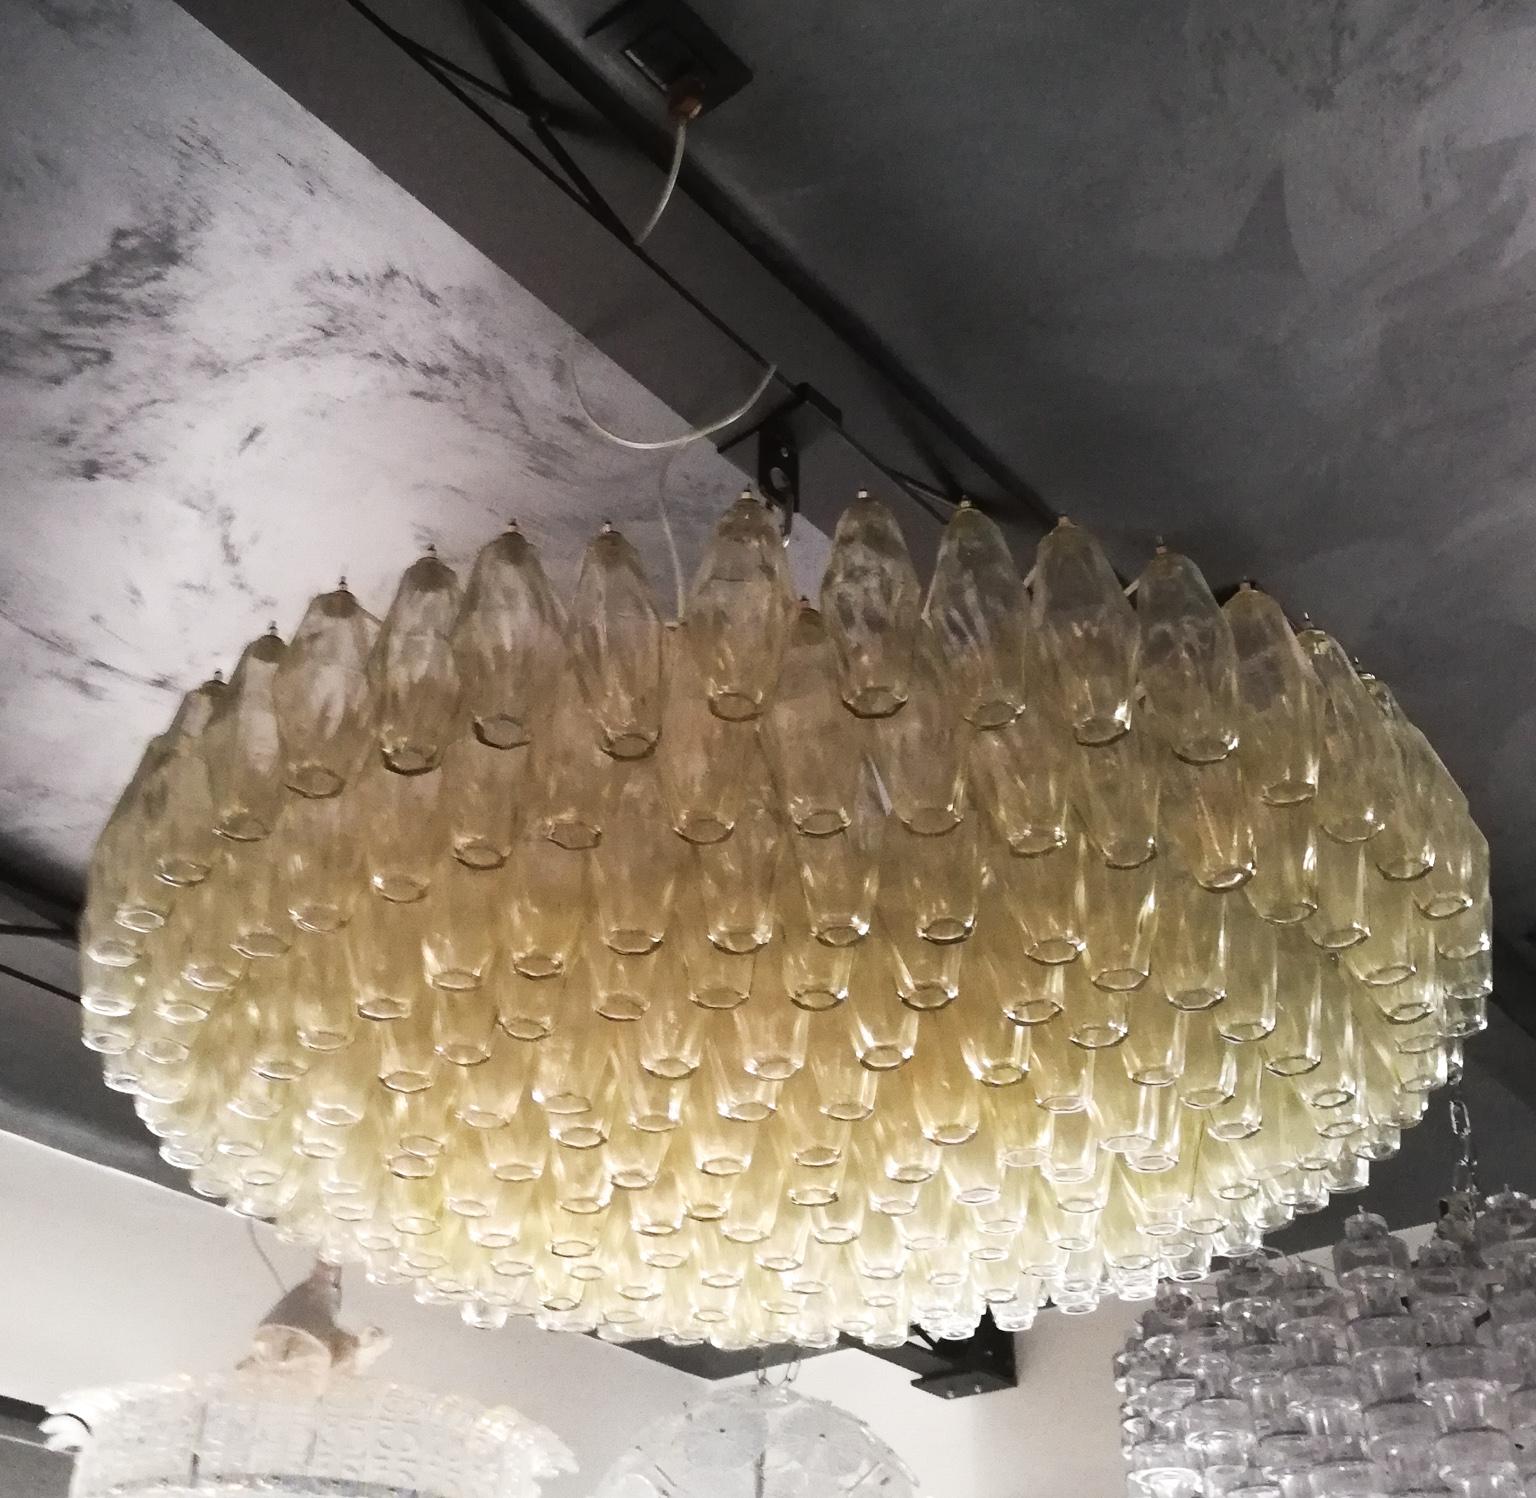 Lustre Poliedri en verre soufflé de Murano de couleur Champagne éléments.
Ce fantastique lustre contient un total de 238 éléments appelés Poliedri. 
L'appareil contient neuf ampoules E26 / 27

Ce classique a été développé dans les années 1960,